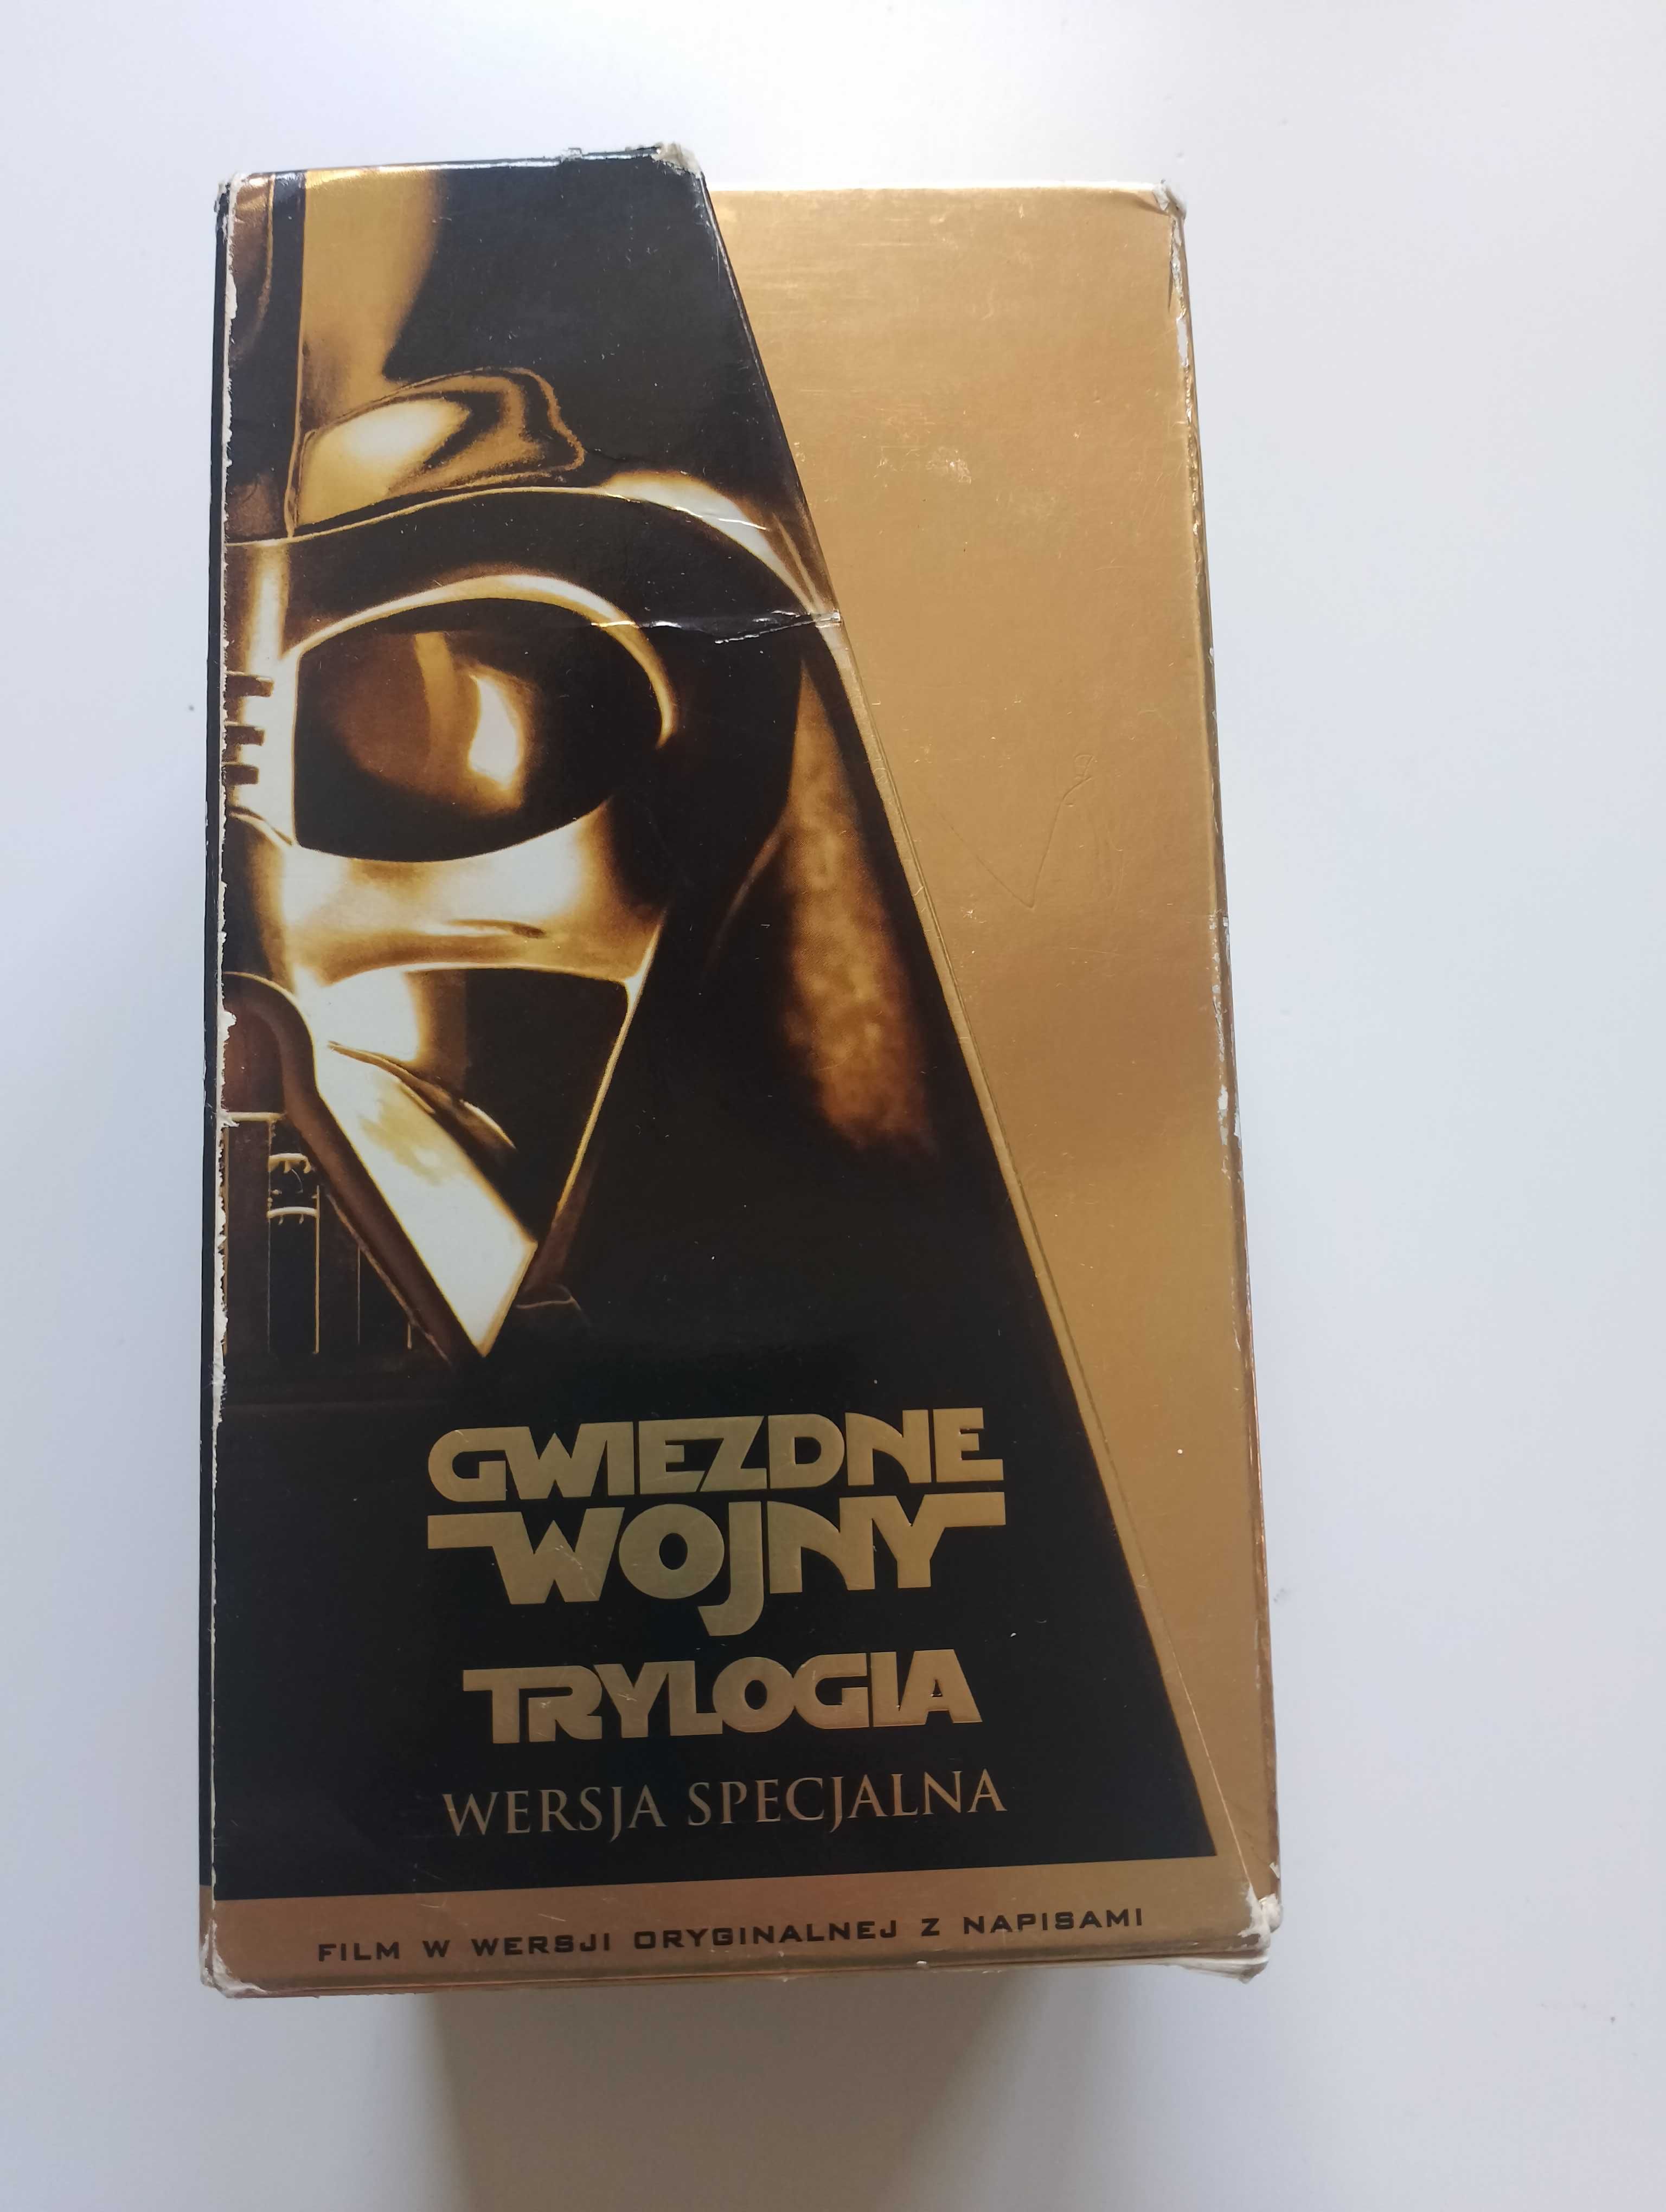 VHS Star Wars Trilogy Special Edition - polskie napisy Gwiezdne Wojny